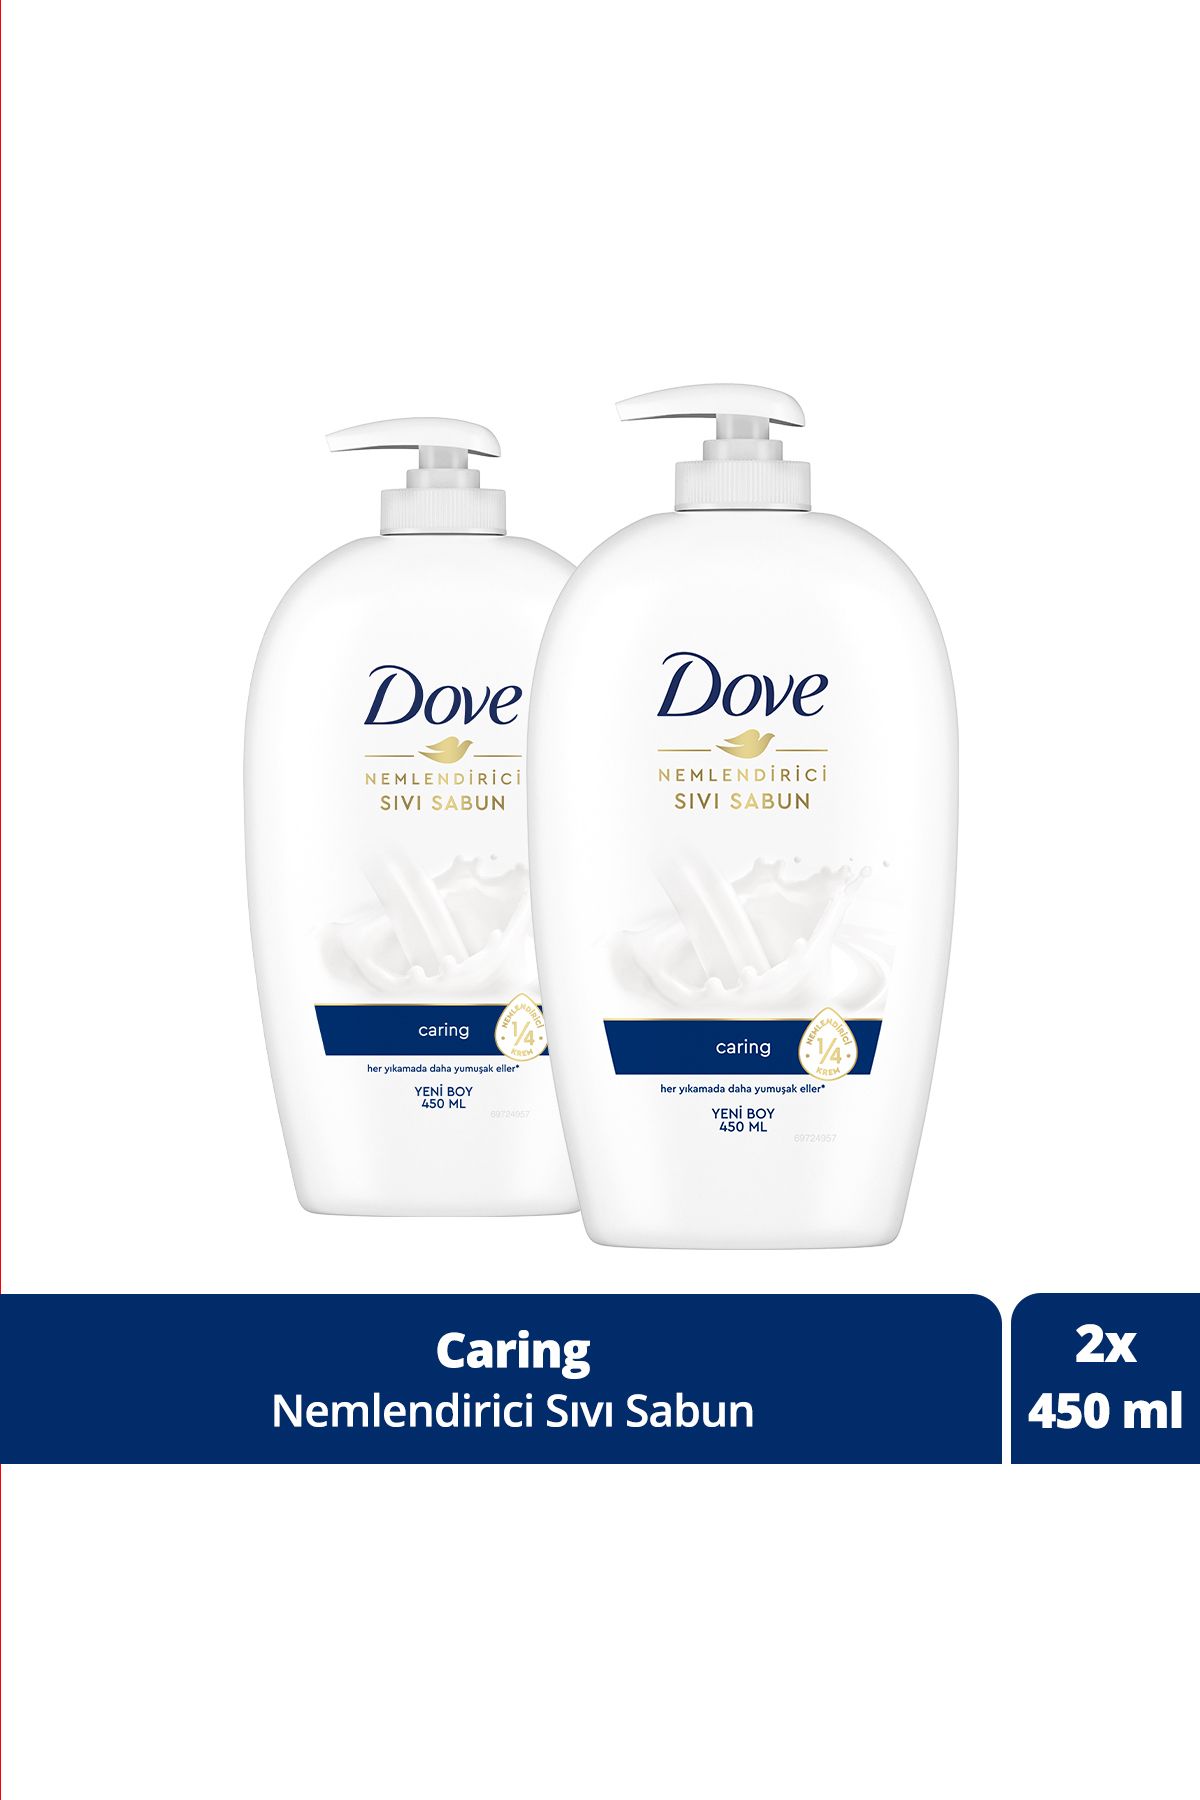 Dove Nemlendirici Sıvı Sabun Caring 1/4 Nemlendirici Krem Etkili 450 ml X2 Adet